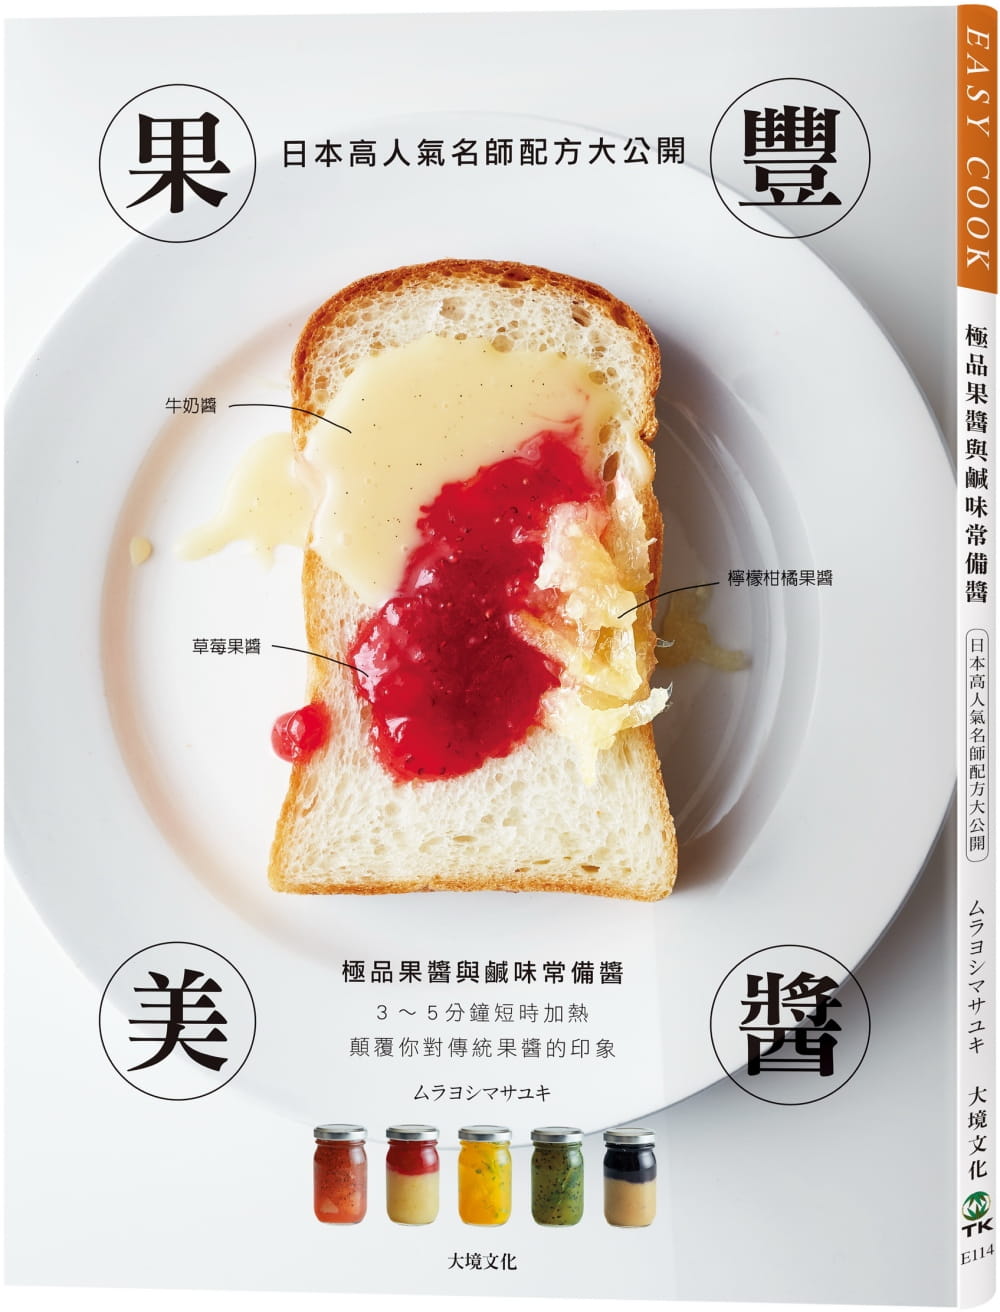 果豐美醬「極品果醬&鹹味常備醬」：日本高人氣名師配方大公開，顛覆你對傳統果醬的印象，